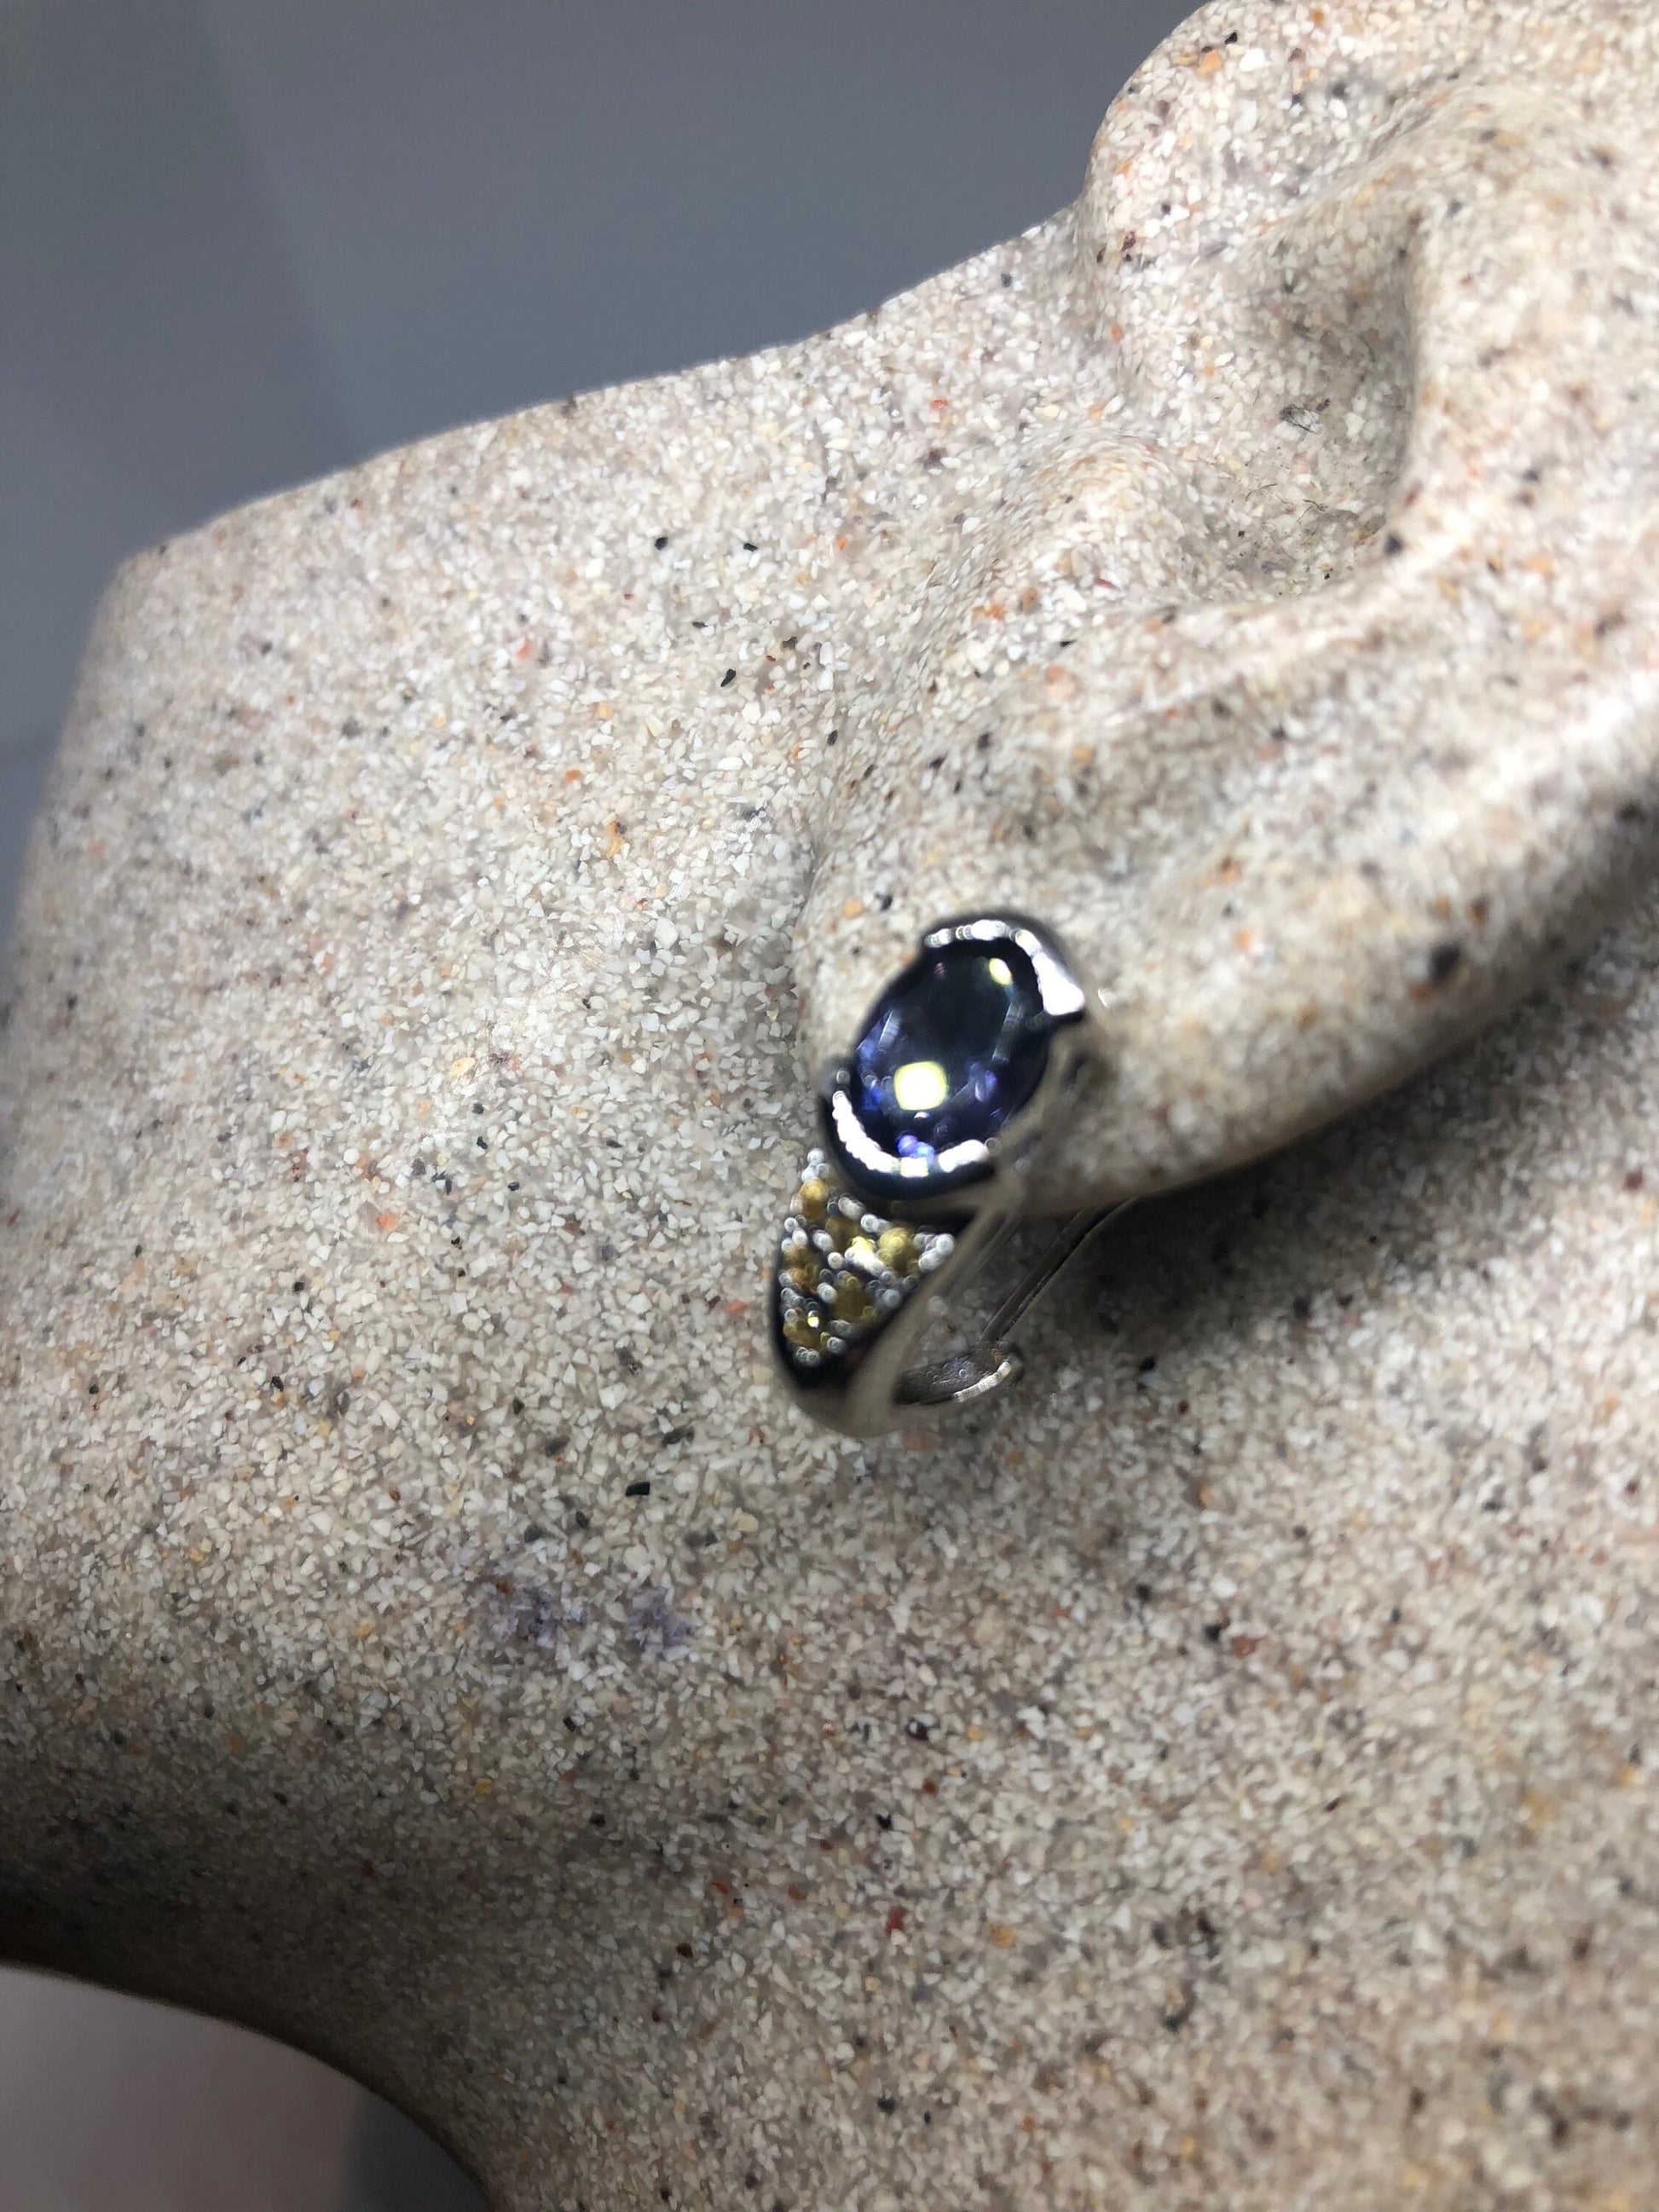 Vintage Sterling Silver Blue Iolite Earrings